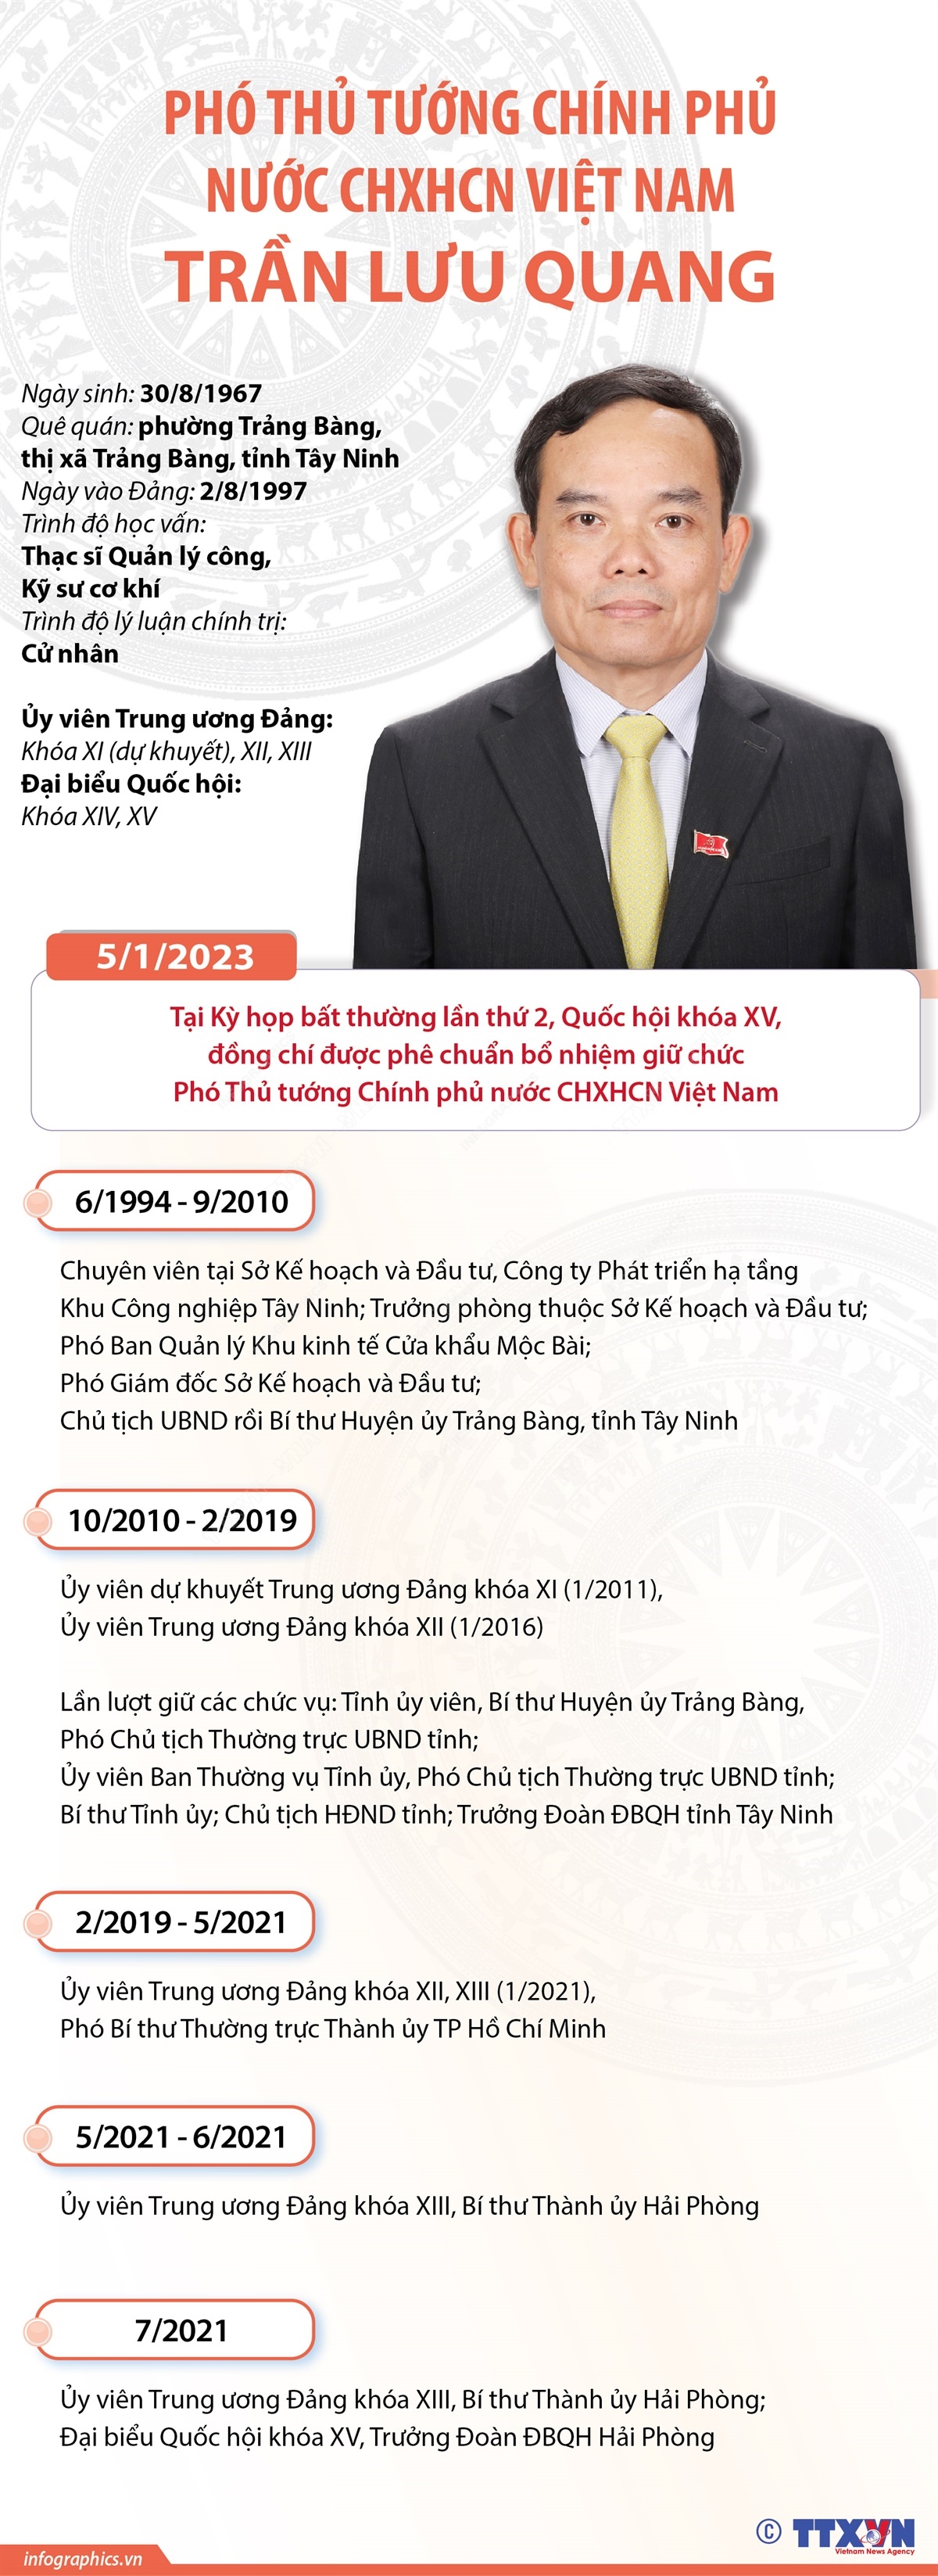 [INFOGRAPHIC] Quá trình công tác của Phó Thủ tướng Trần Lưu Quang - Ảnh 1.